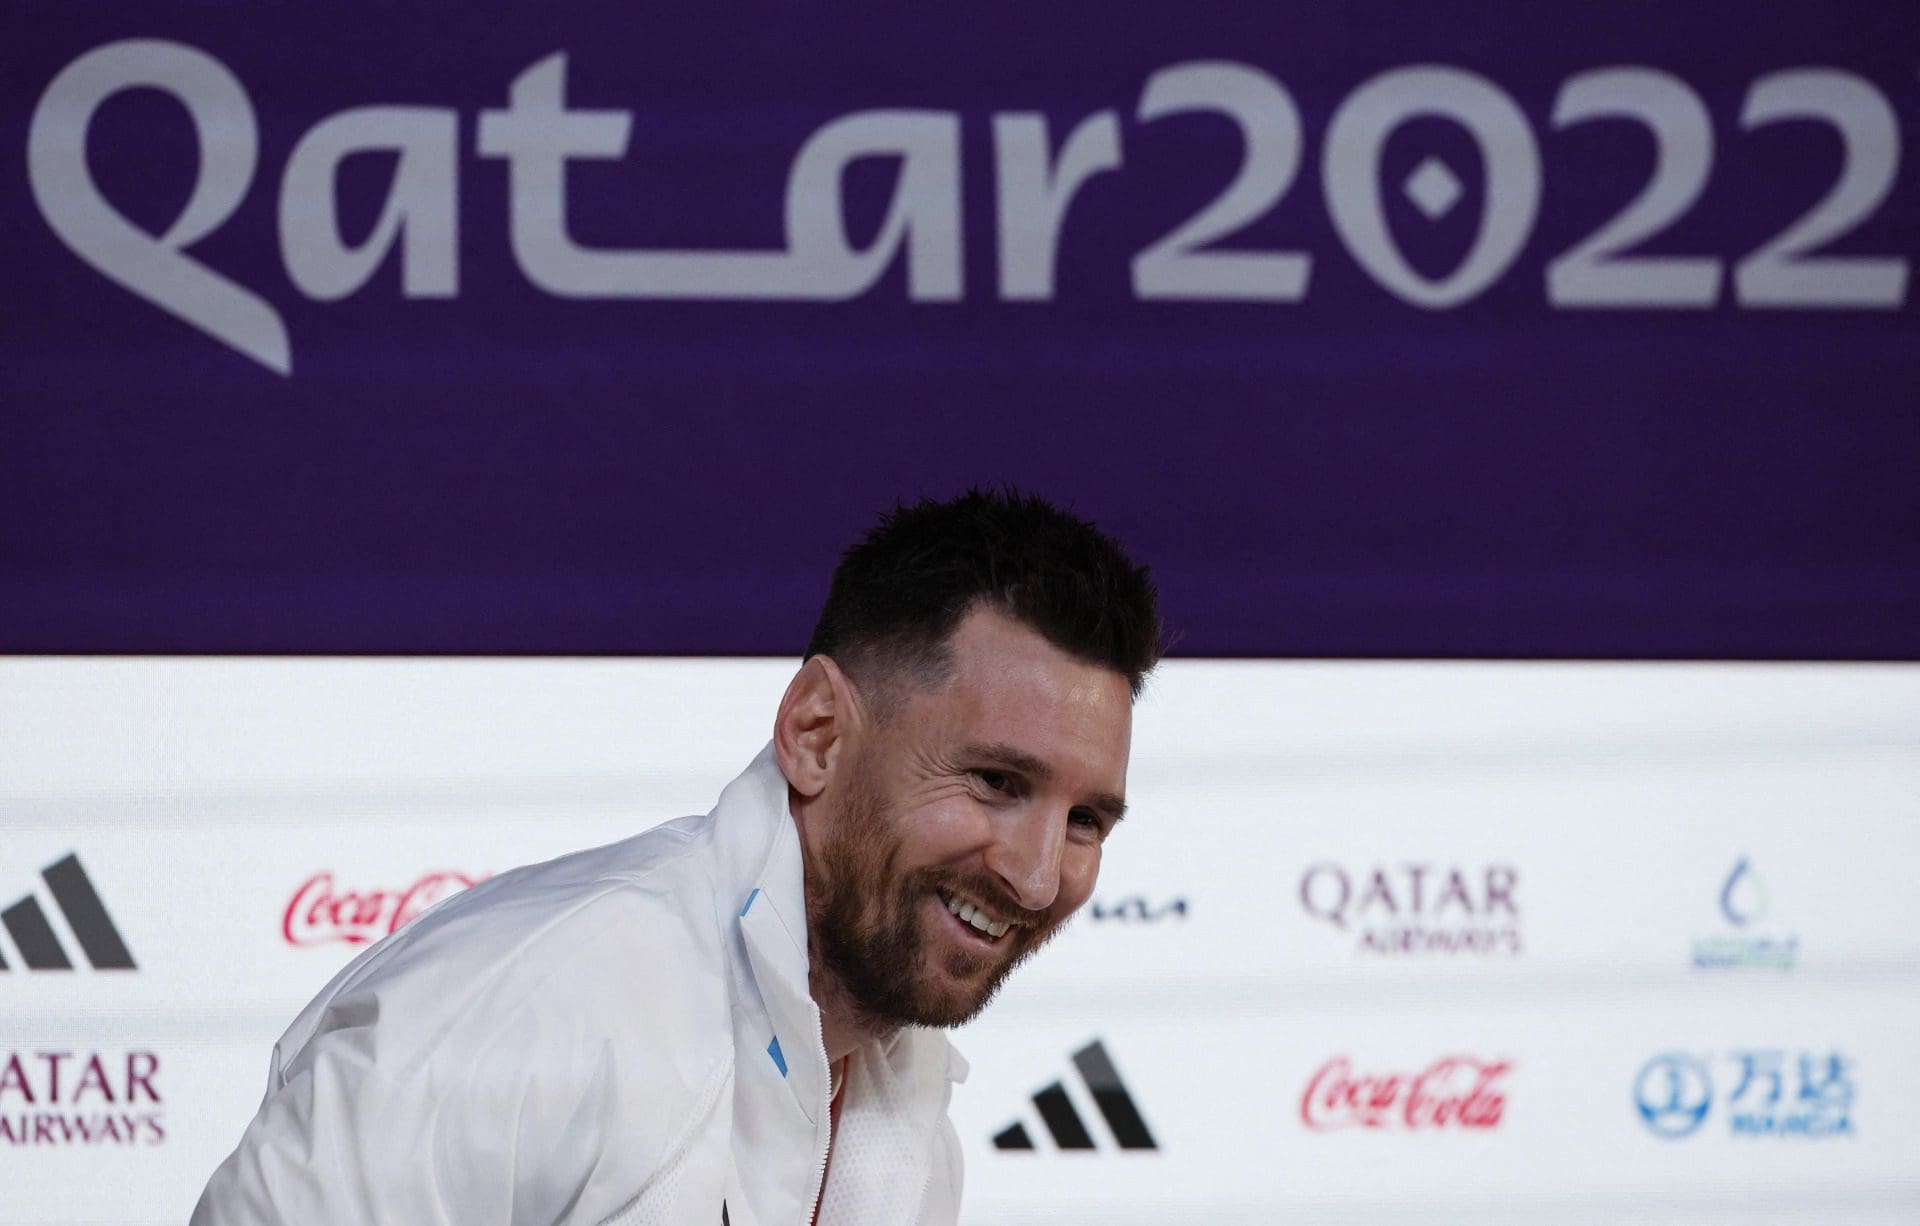 Mundial2022 “Chego num grande momento pessoal e físico” diz Messi